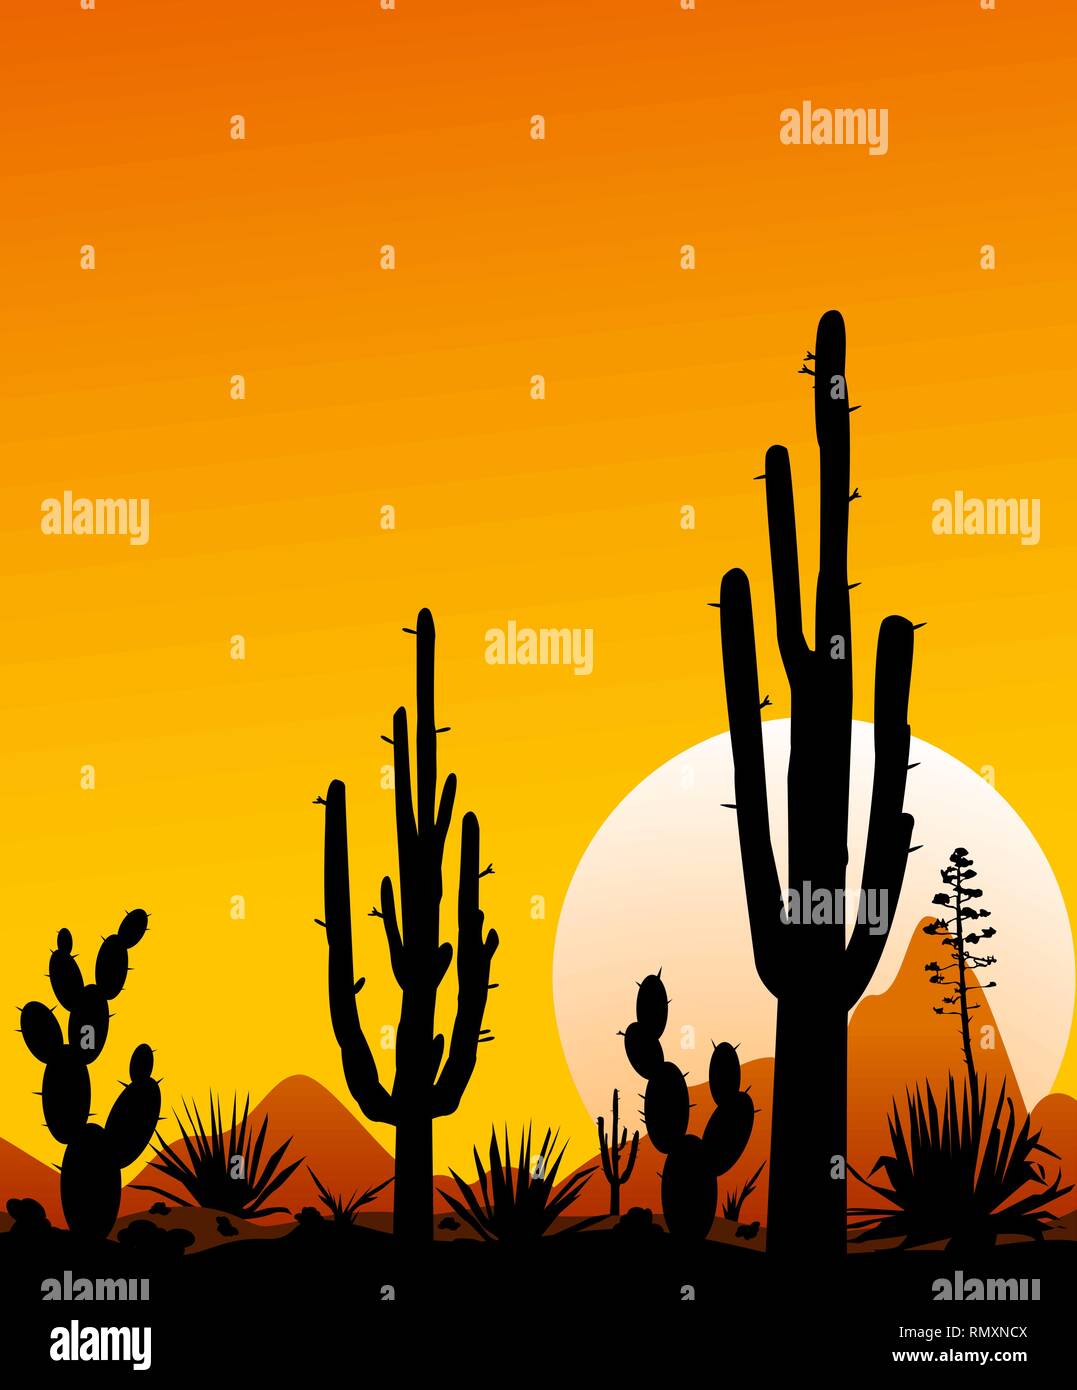 Sonnenuntergang in der mexikanischen Wüste. Silhouetten von Steinen, Kakteen und Pflanzen. Landschaft der Wüste mit Kakteen. Die steinige Wüste. Stock Vektor